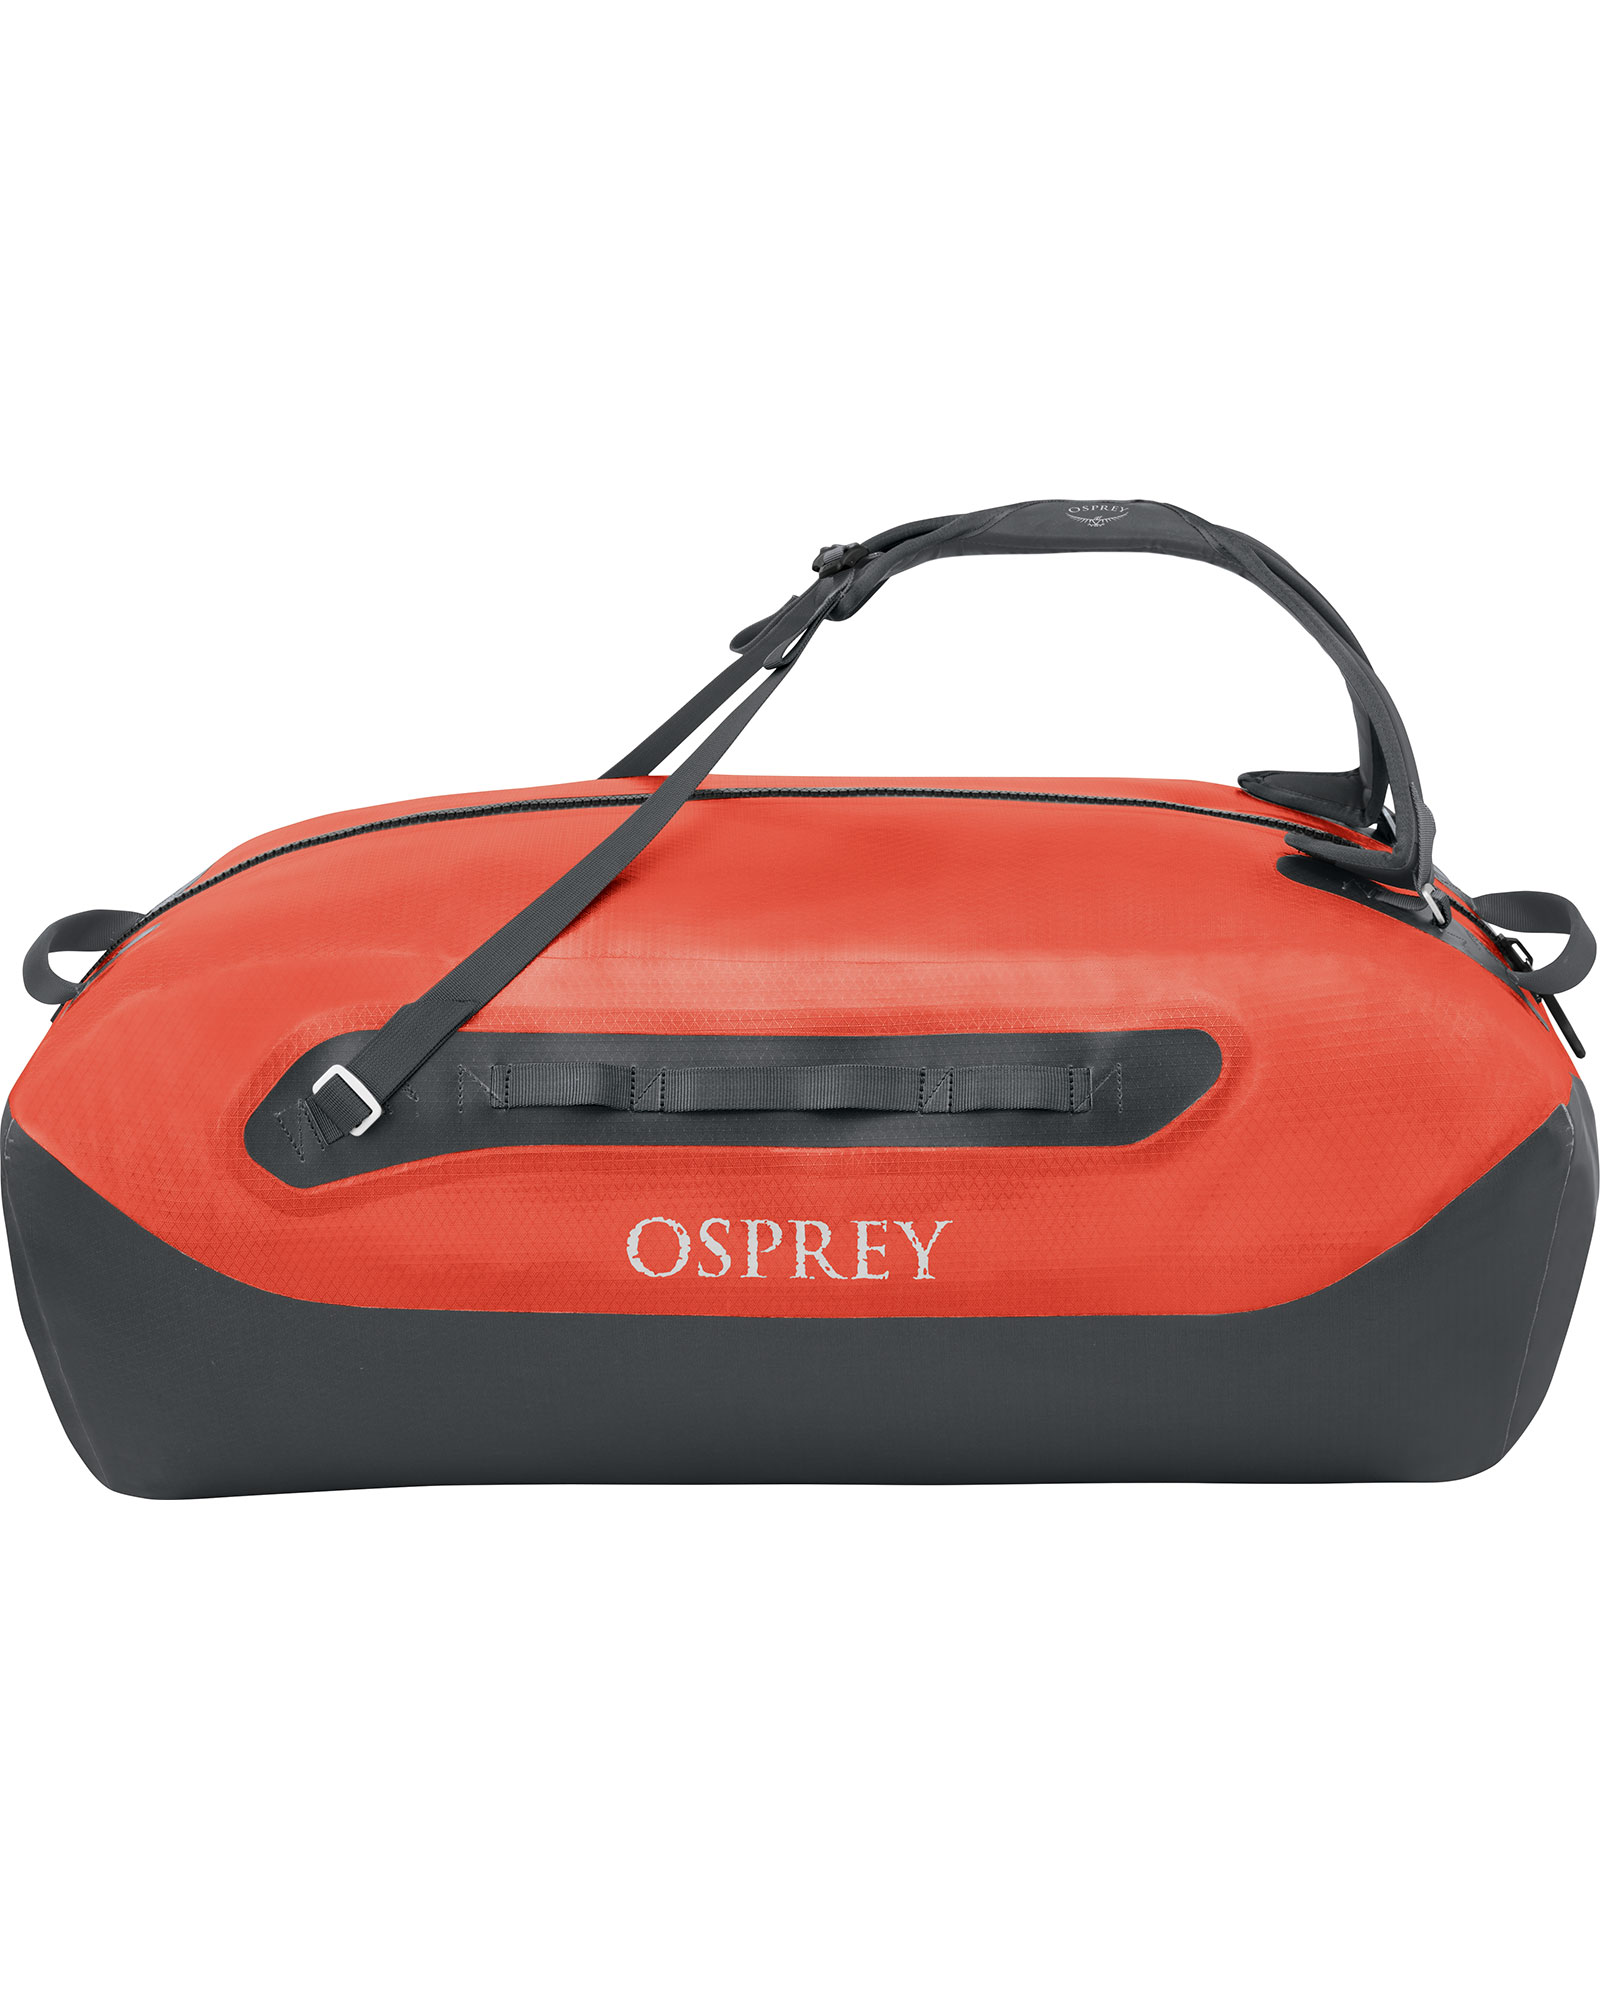 Osprey Transporter 100 Waterproof Duffel